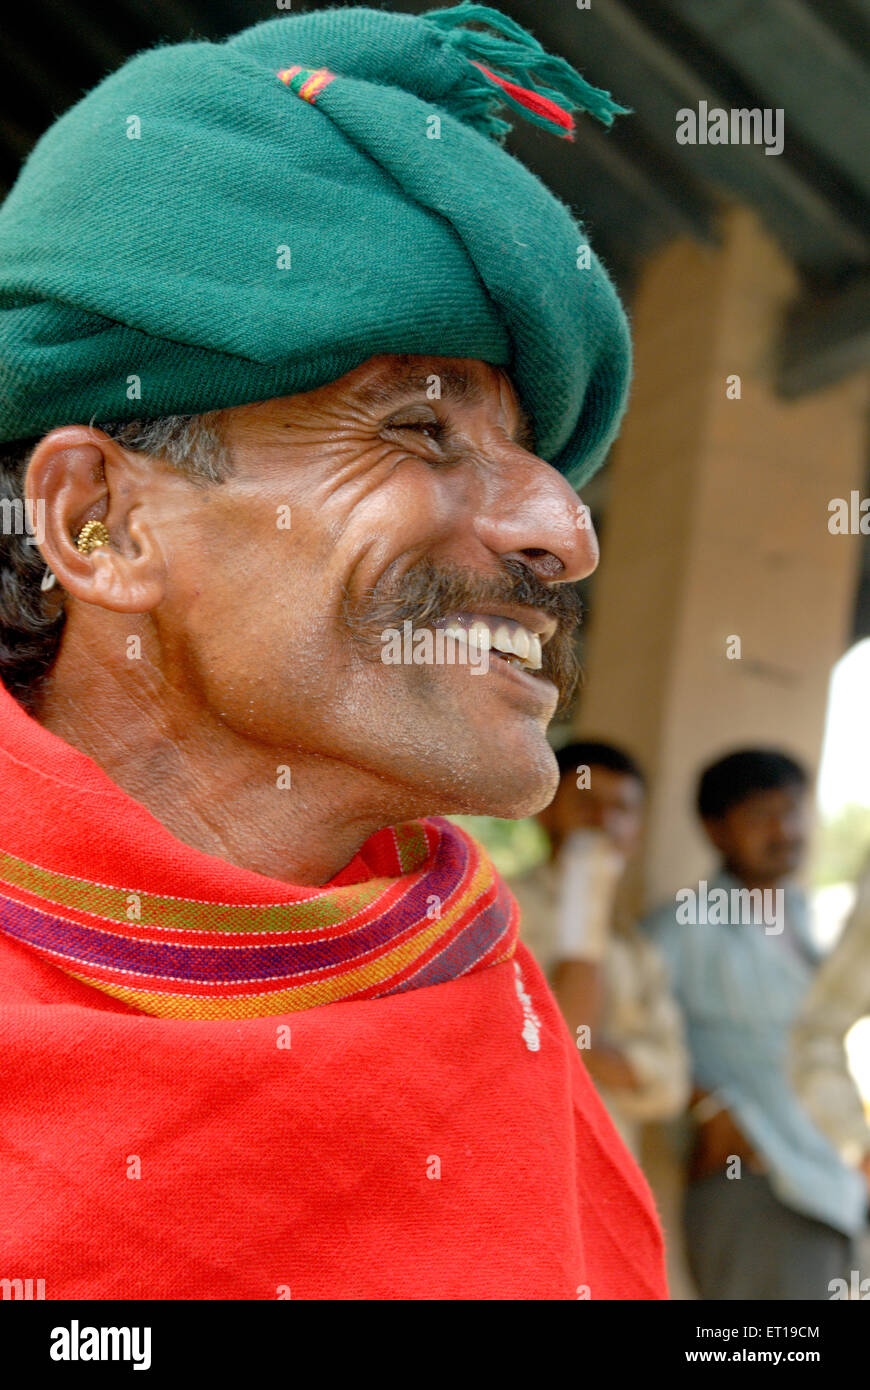 Profil de l'homme indien en turban vert et rouge shawl laughing Inde M.# 781T Banque D'Images